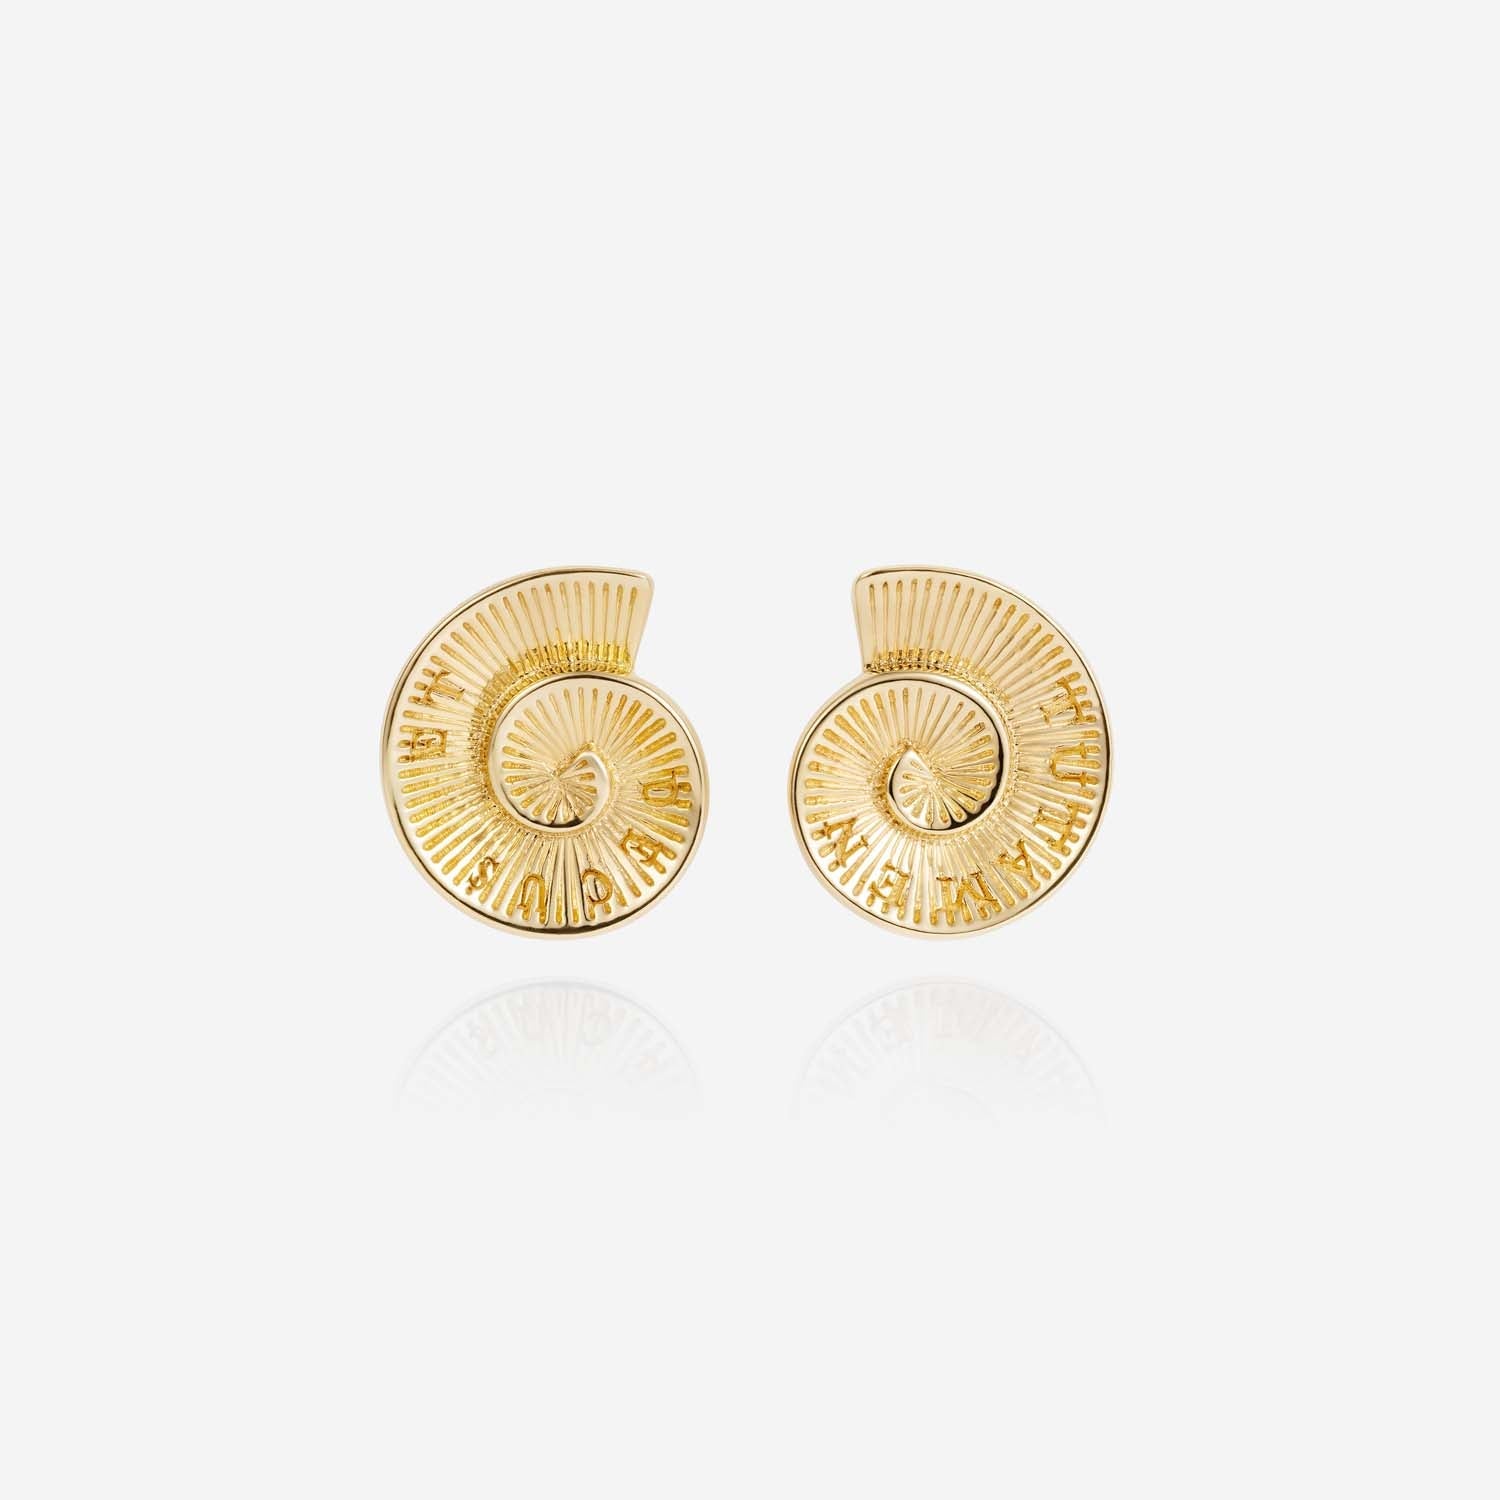 886 Royal Mint Earrings Tutamen Stud Earrings 18ct Yellow Gold